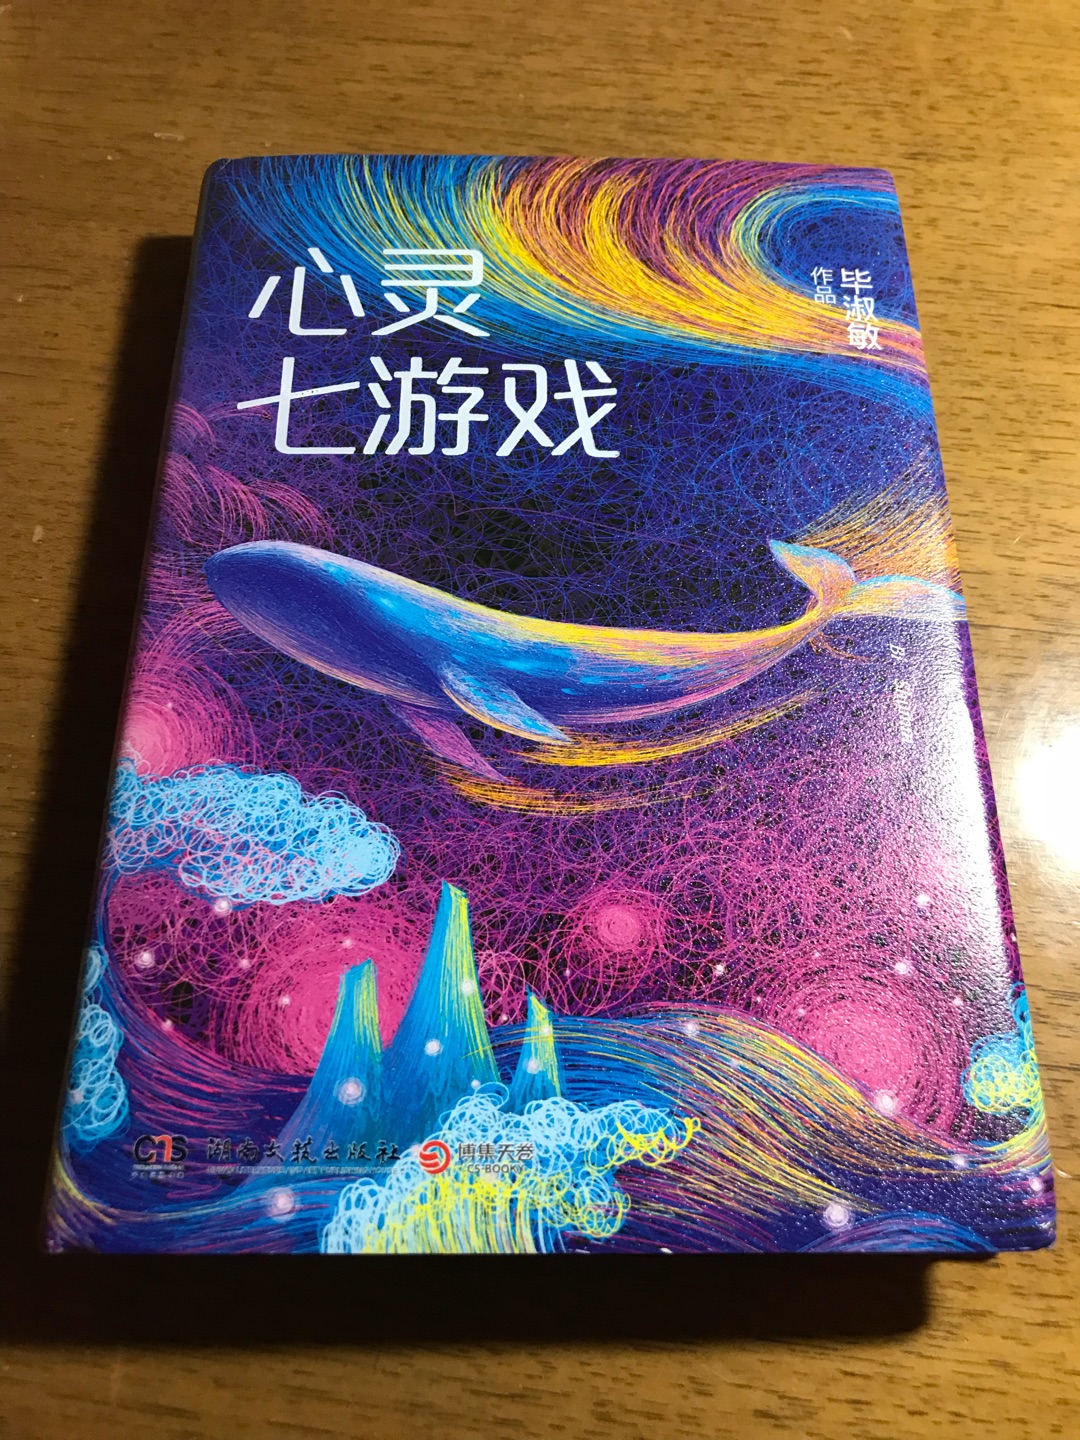 很喜欢毕淑敏老师的作品，这本书一样非常精彩